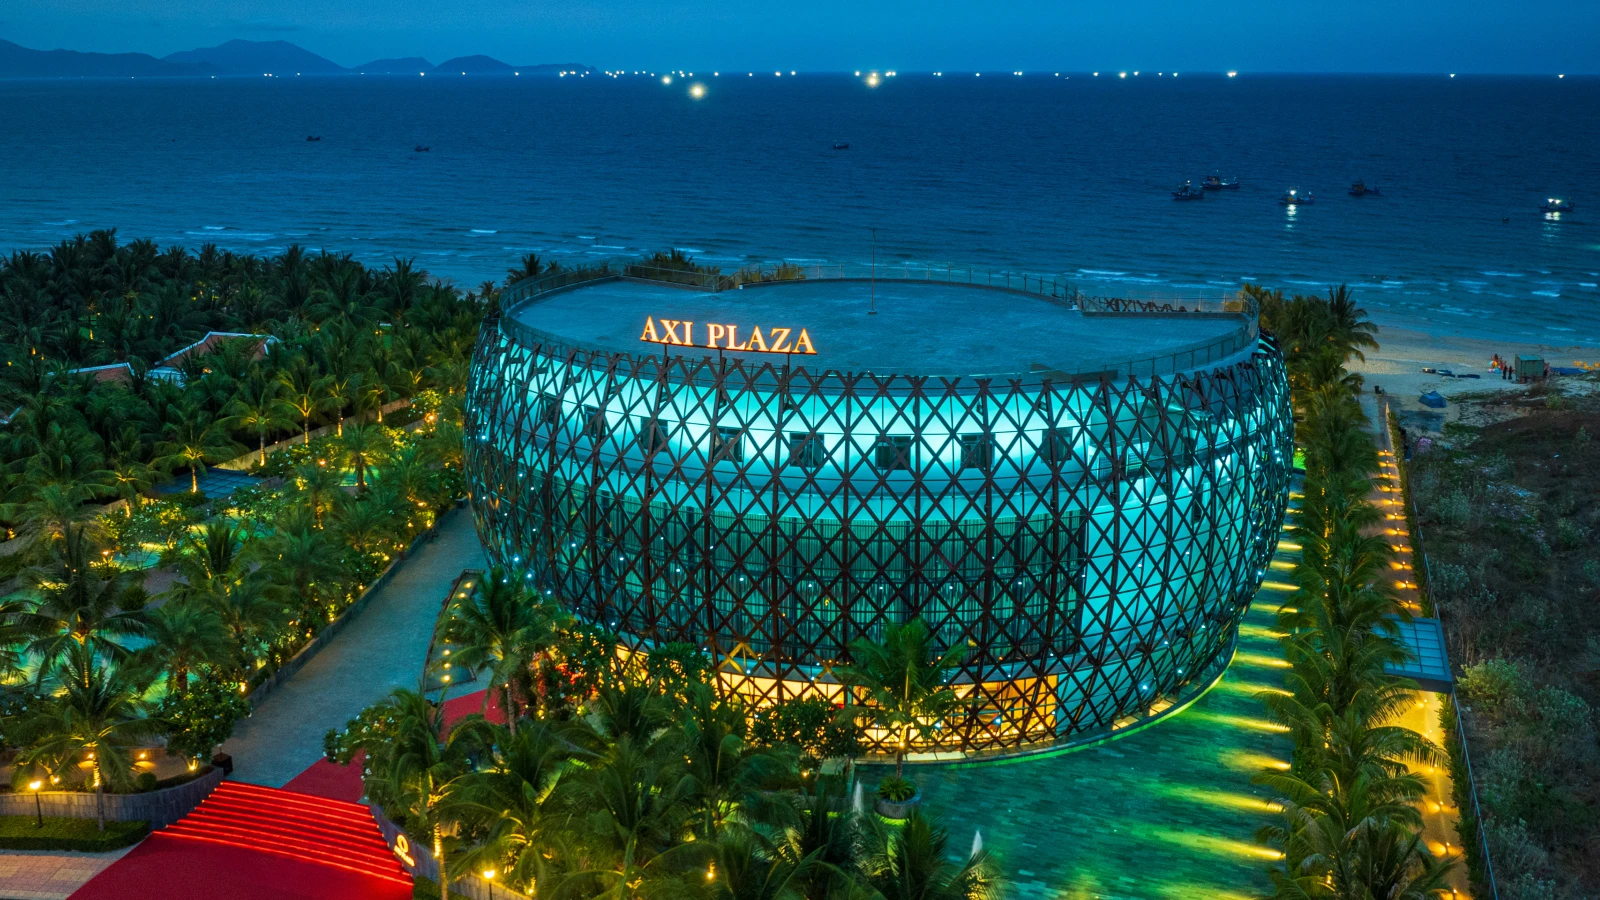 Axi Plaza khai trương, bổ sung nhiều tiện ích cho du lịch Cam Ranh 